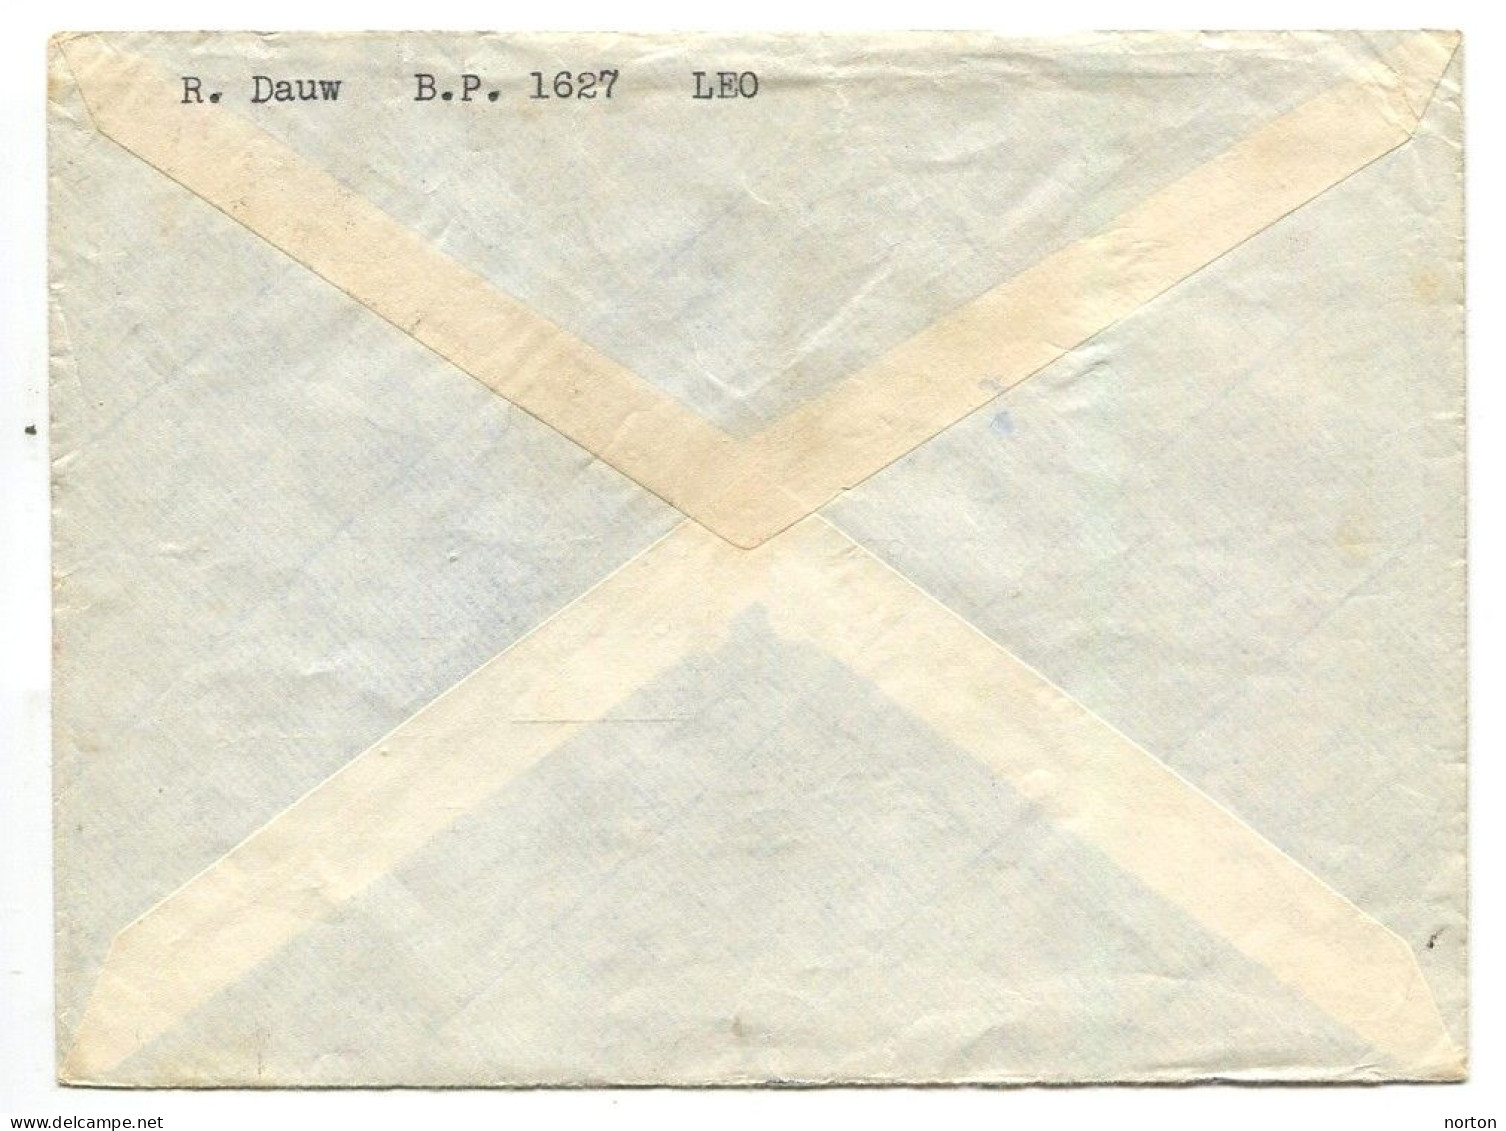 Congo Léopoldville 1 Oblit. Keach 12B(A)1 Sur C.O.B. 317 Sur Lettre Vers Turnhout Le 04/02/1954 - Lettres & Documents